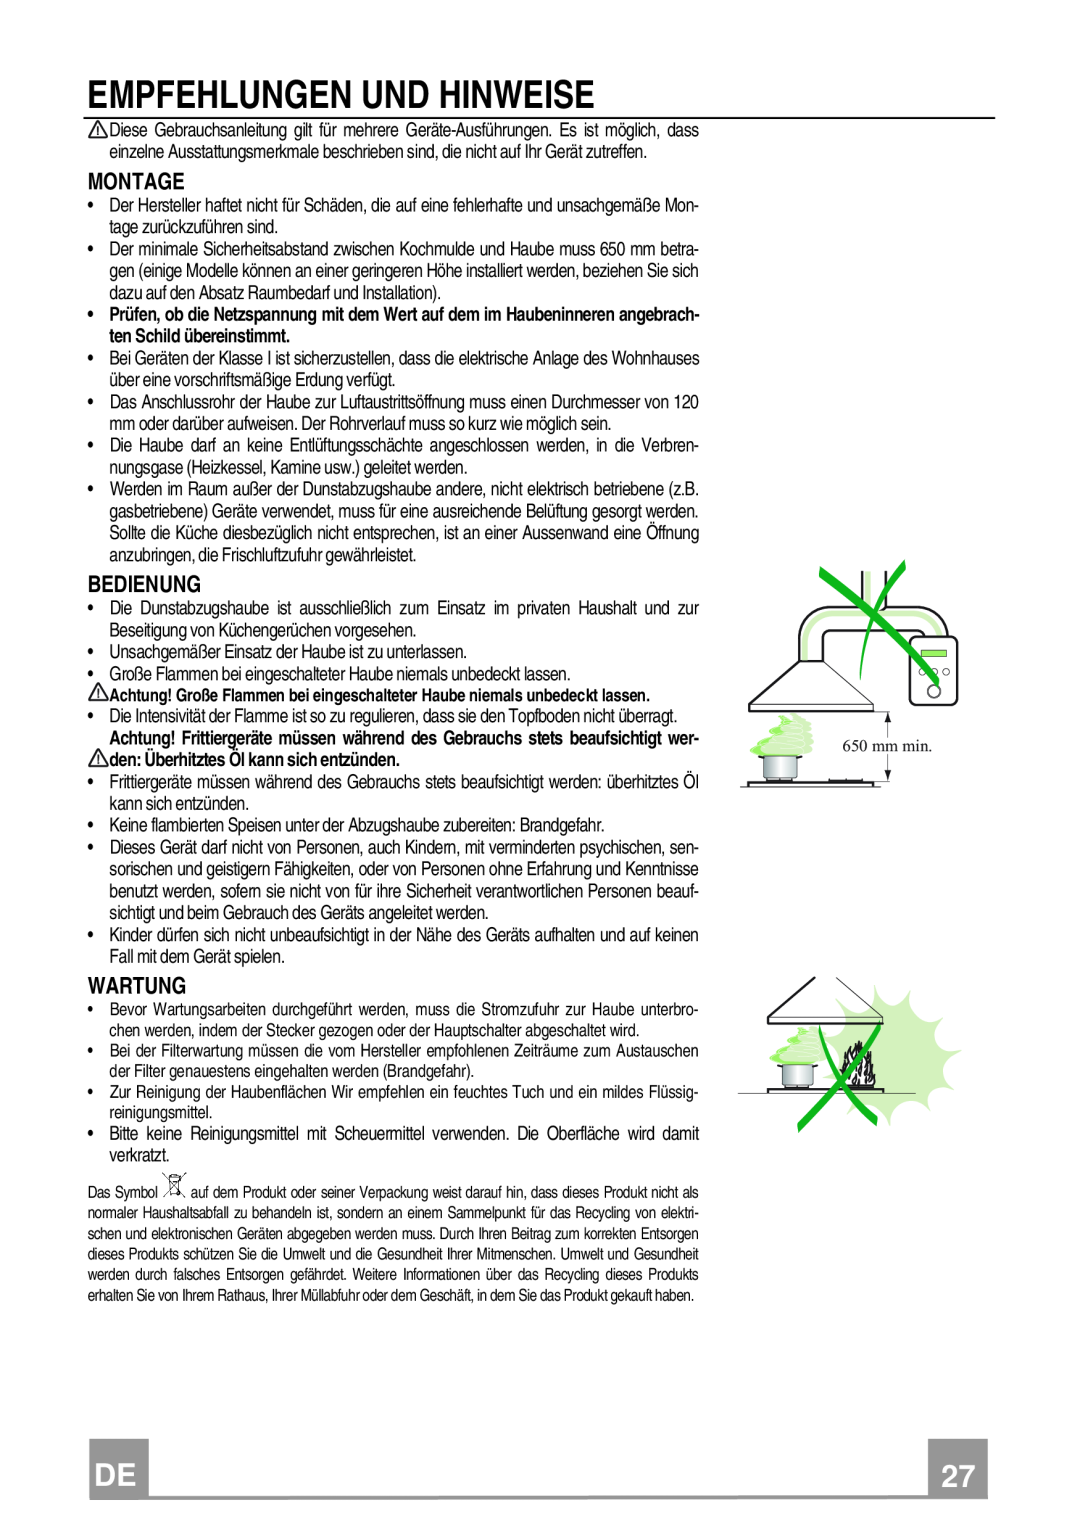 Franke Consumer Products FCR 908 TC manual Empfehlungen Und Hinweise, den Überhitztes Öl kann sich entzünden 